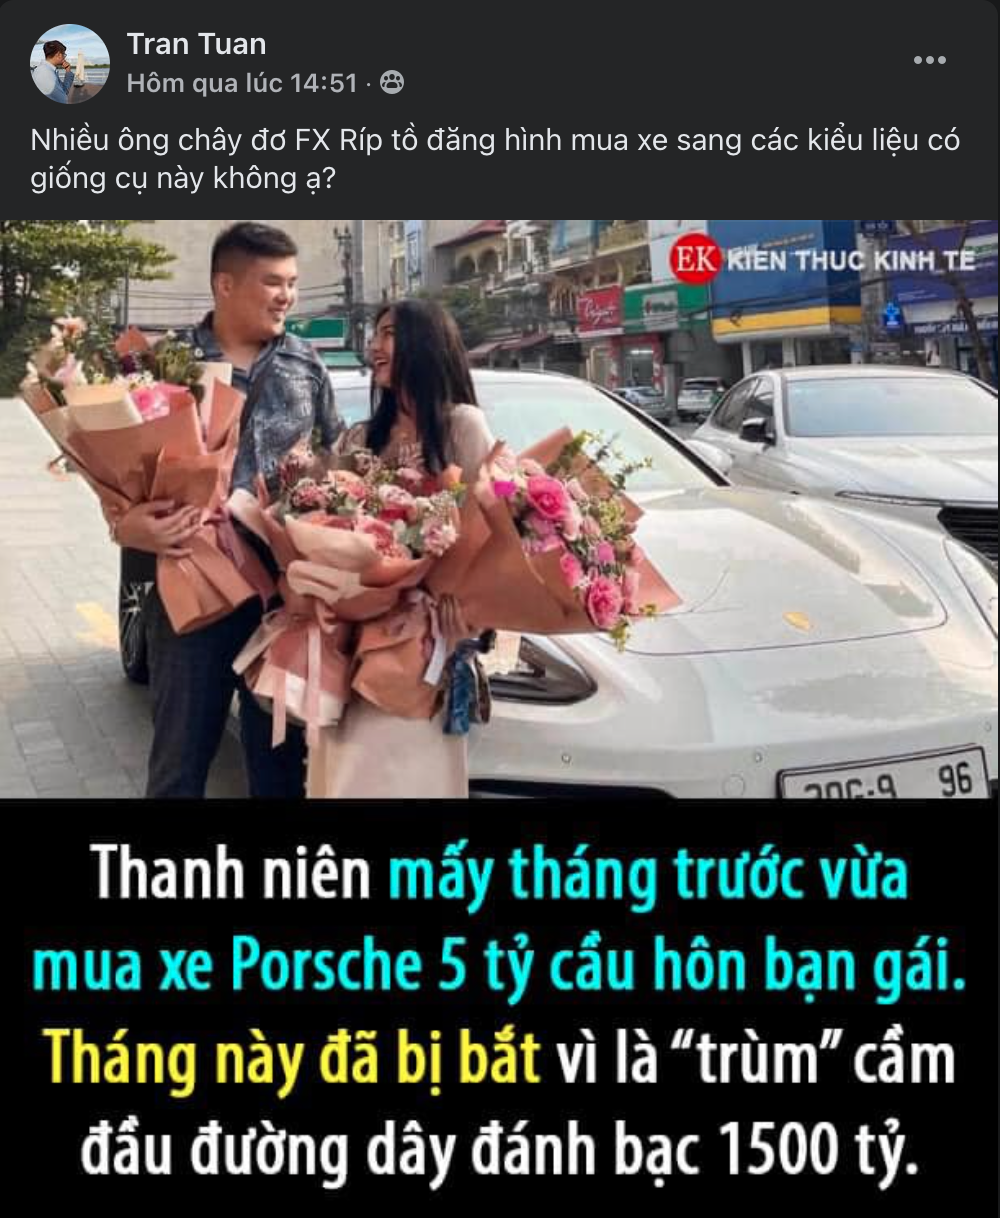 Diem-nong-MXH-ngay-05-10-Cong-dong-Trader-Viet-Nam-TraderViet3.png